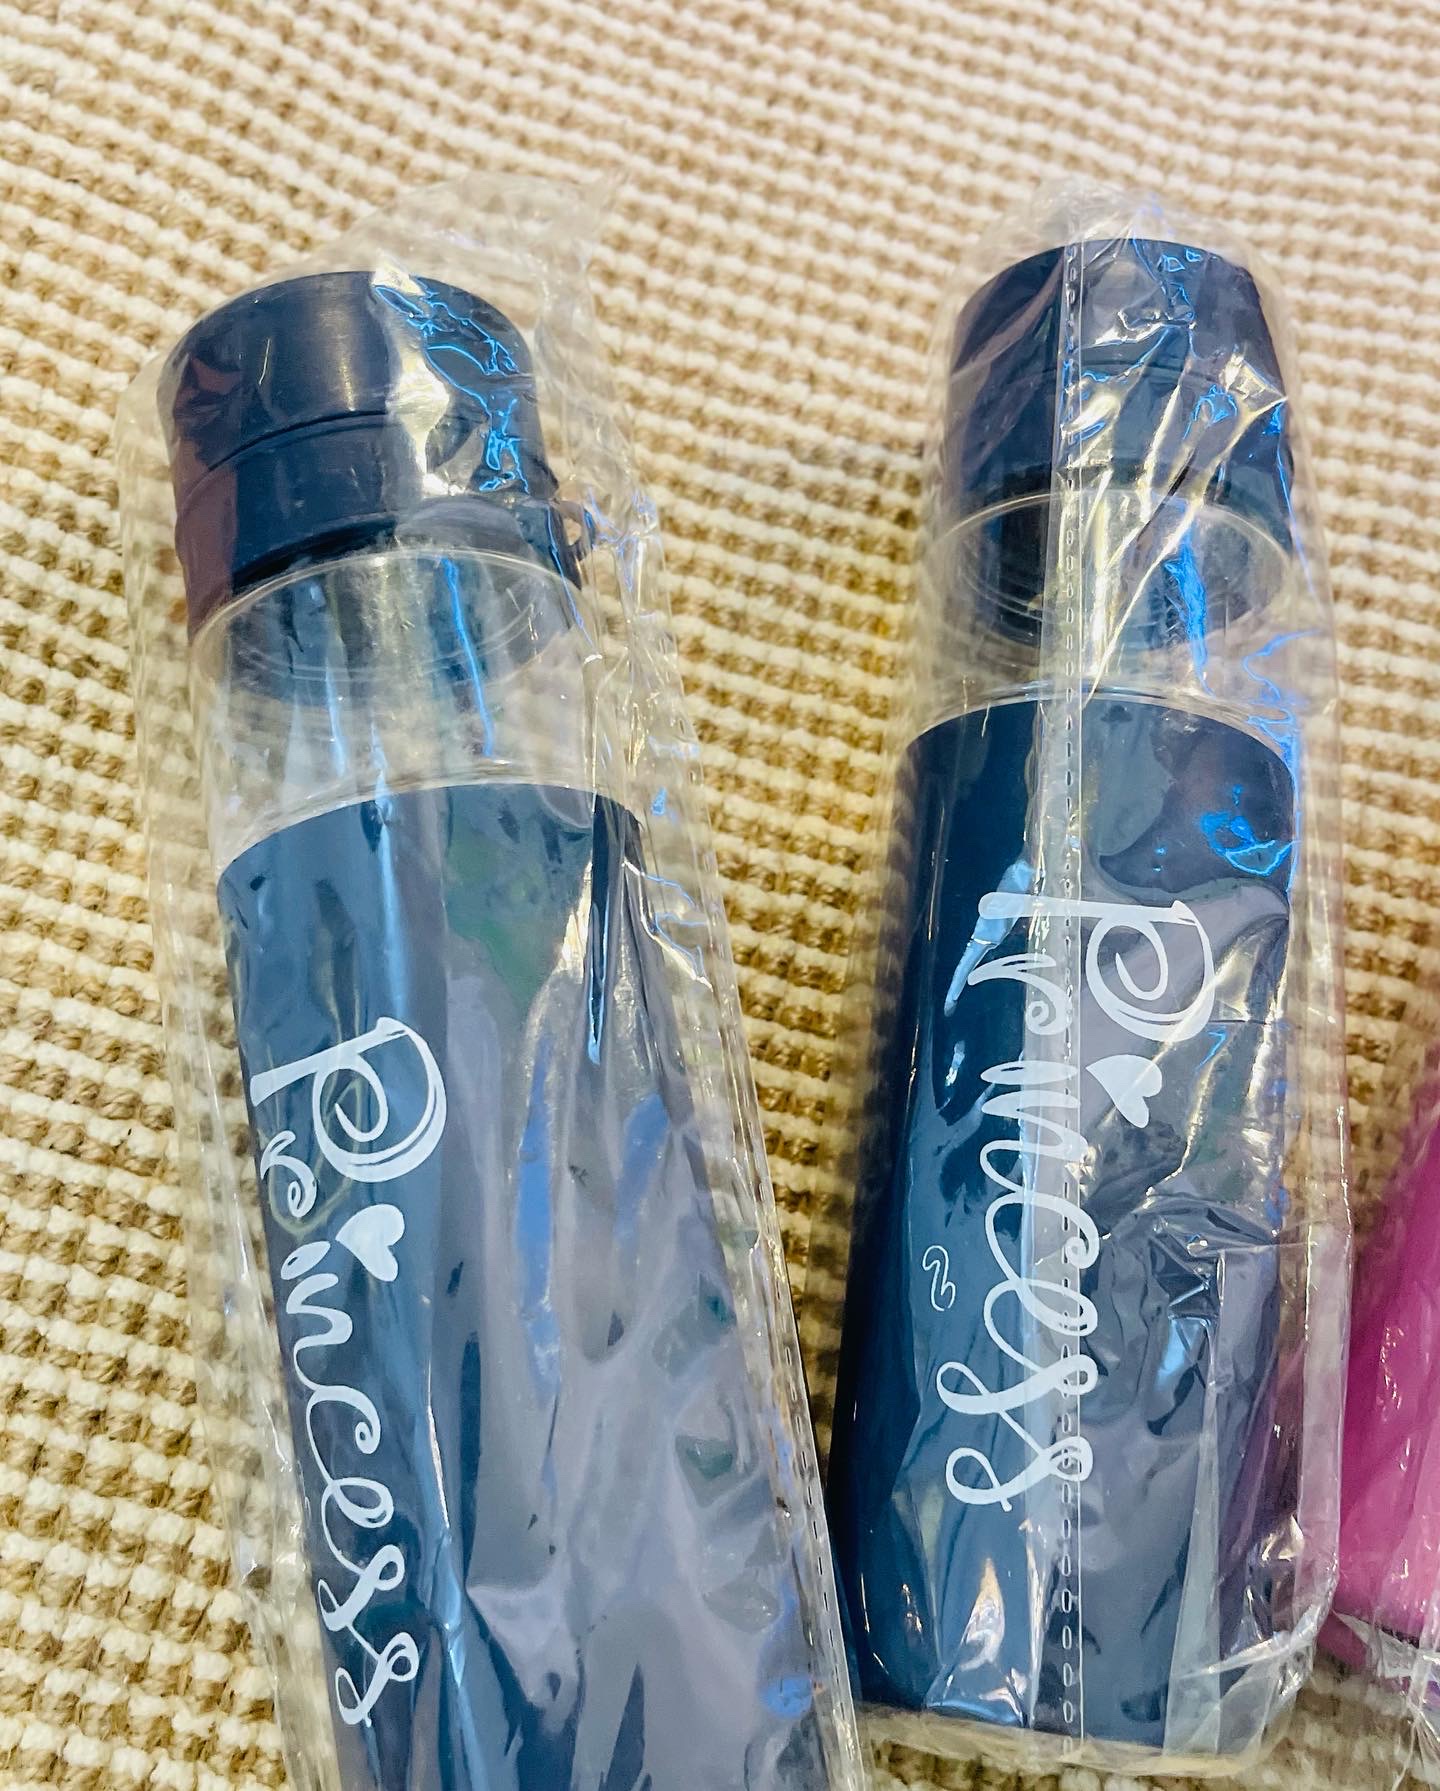 Princess water bottles